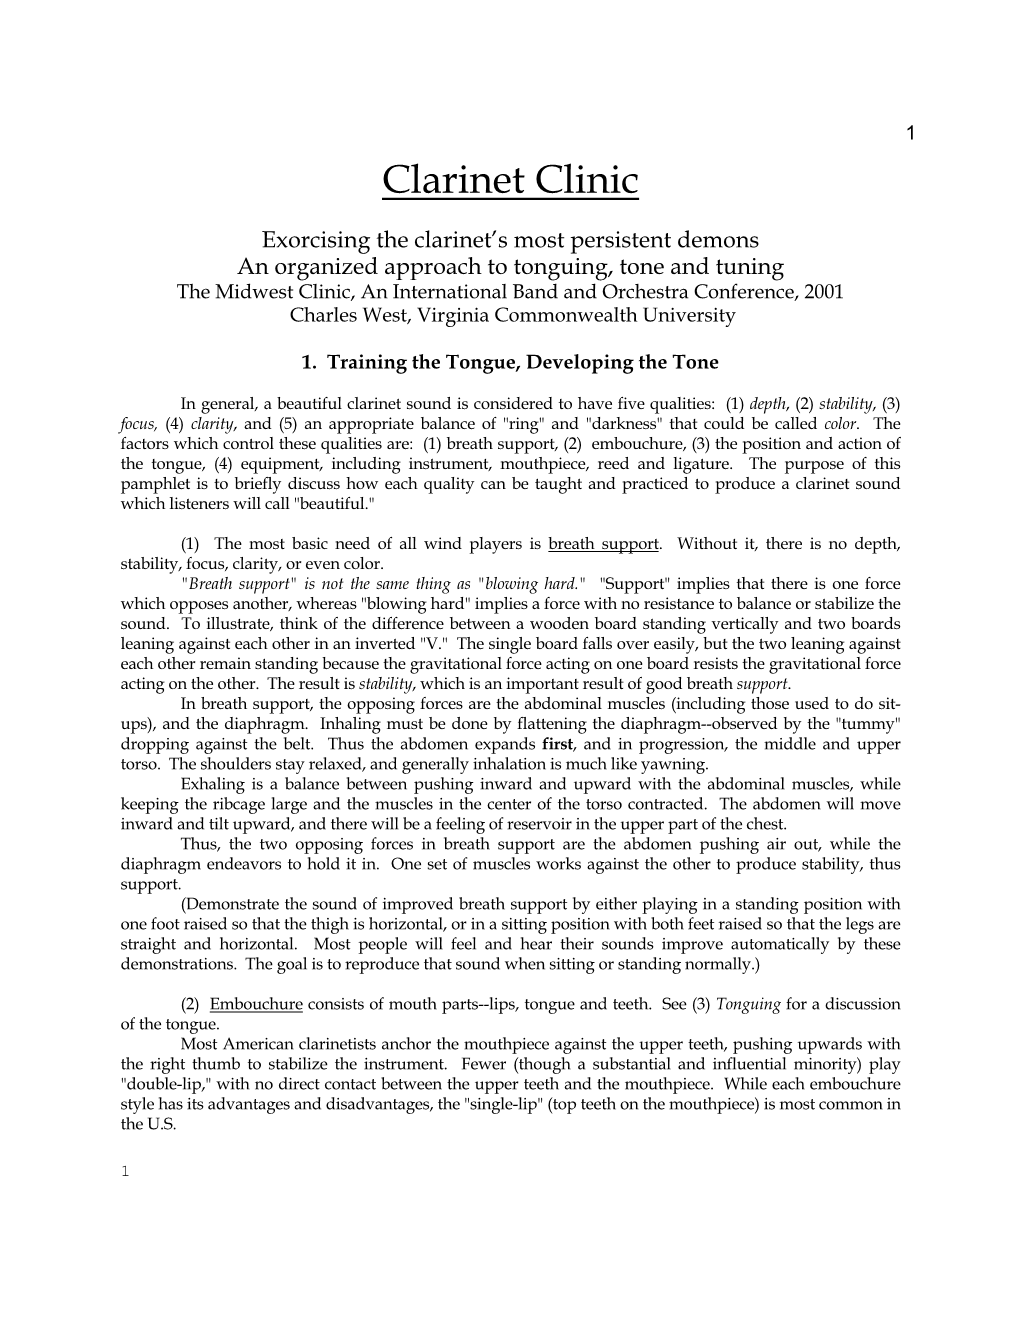 Clarinet Clinic